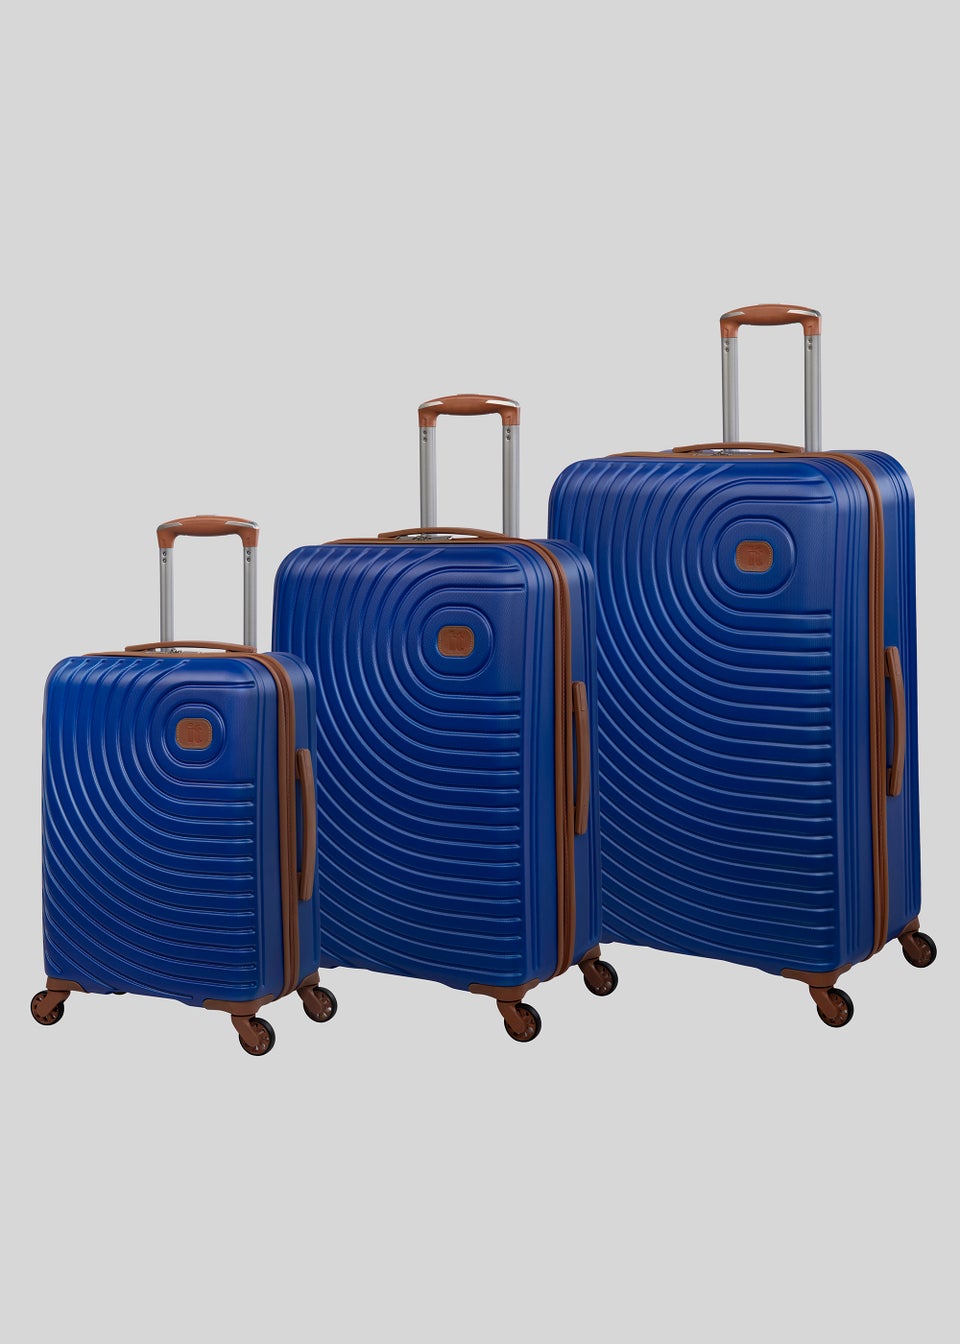 IT Luggage Blue Hard Shell Suitcase